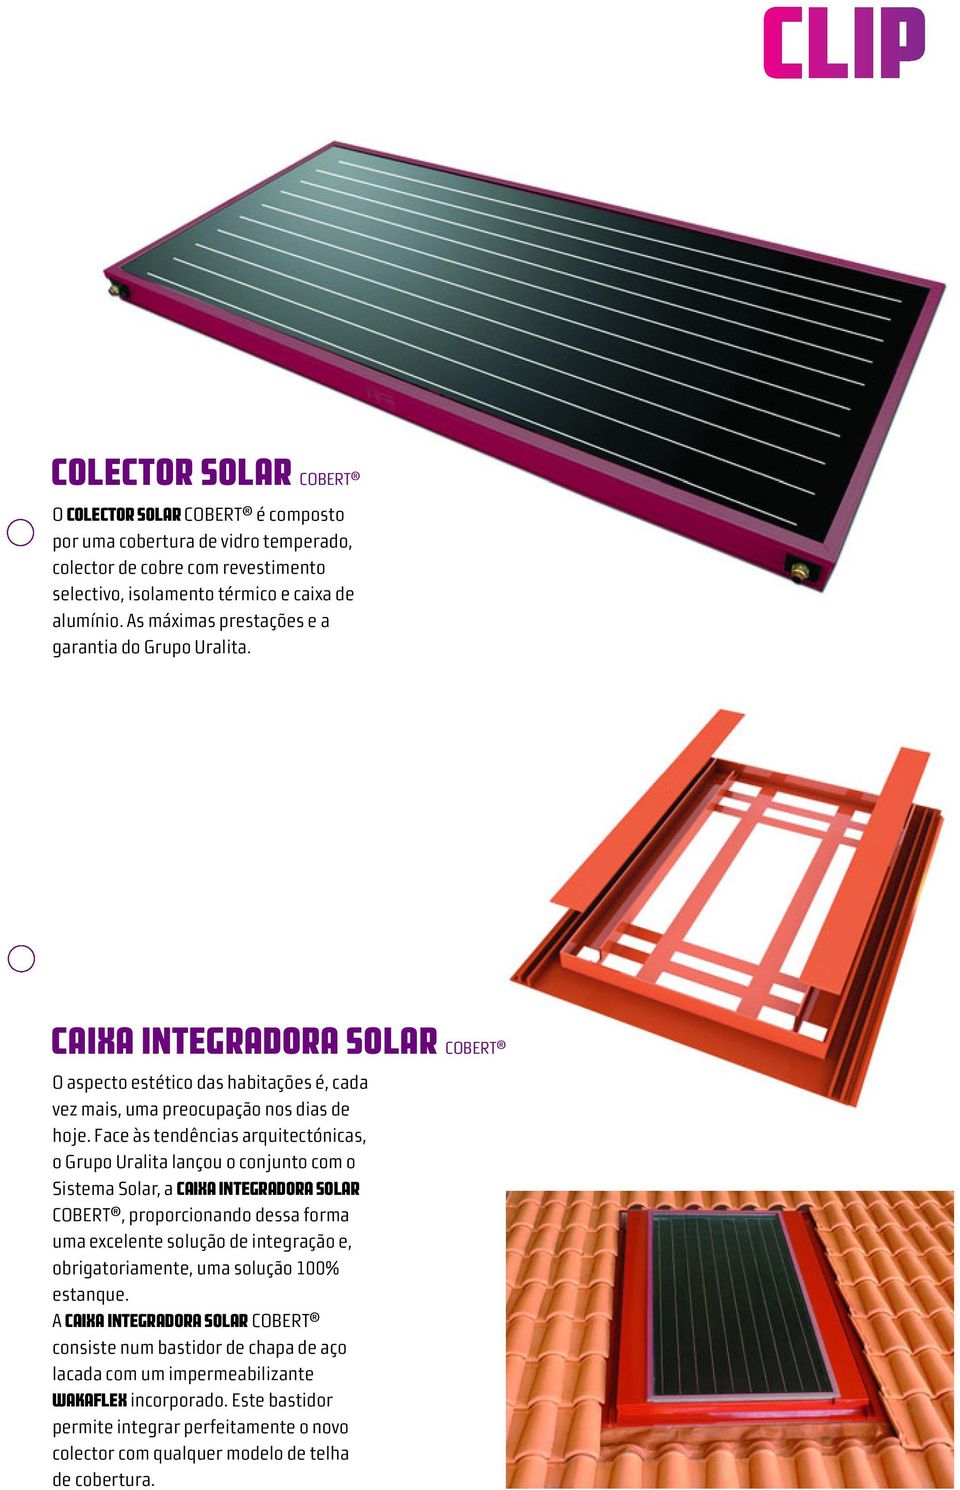 Face às tendências arquitectónicas, o Grupo Uralita lançou o conjunto com o Sistema Solar, a CAIXA INTEGRADORA SOLAR COBERT, proporcionando dessa forma uma excelente solução de integração e,